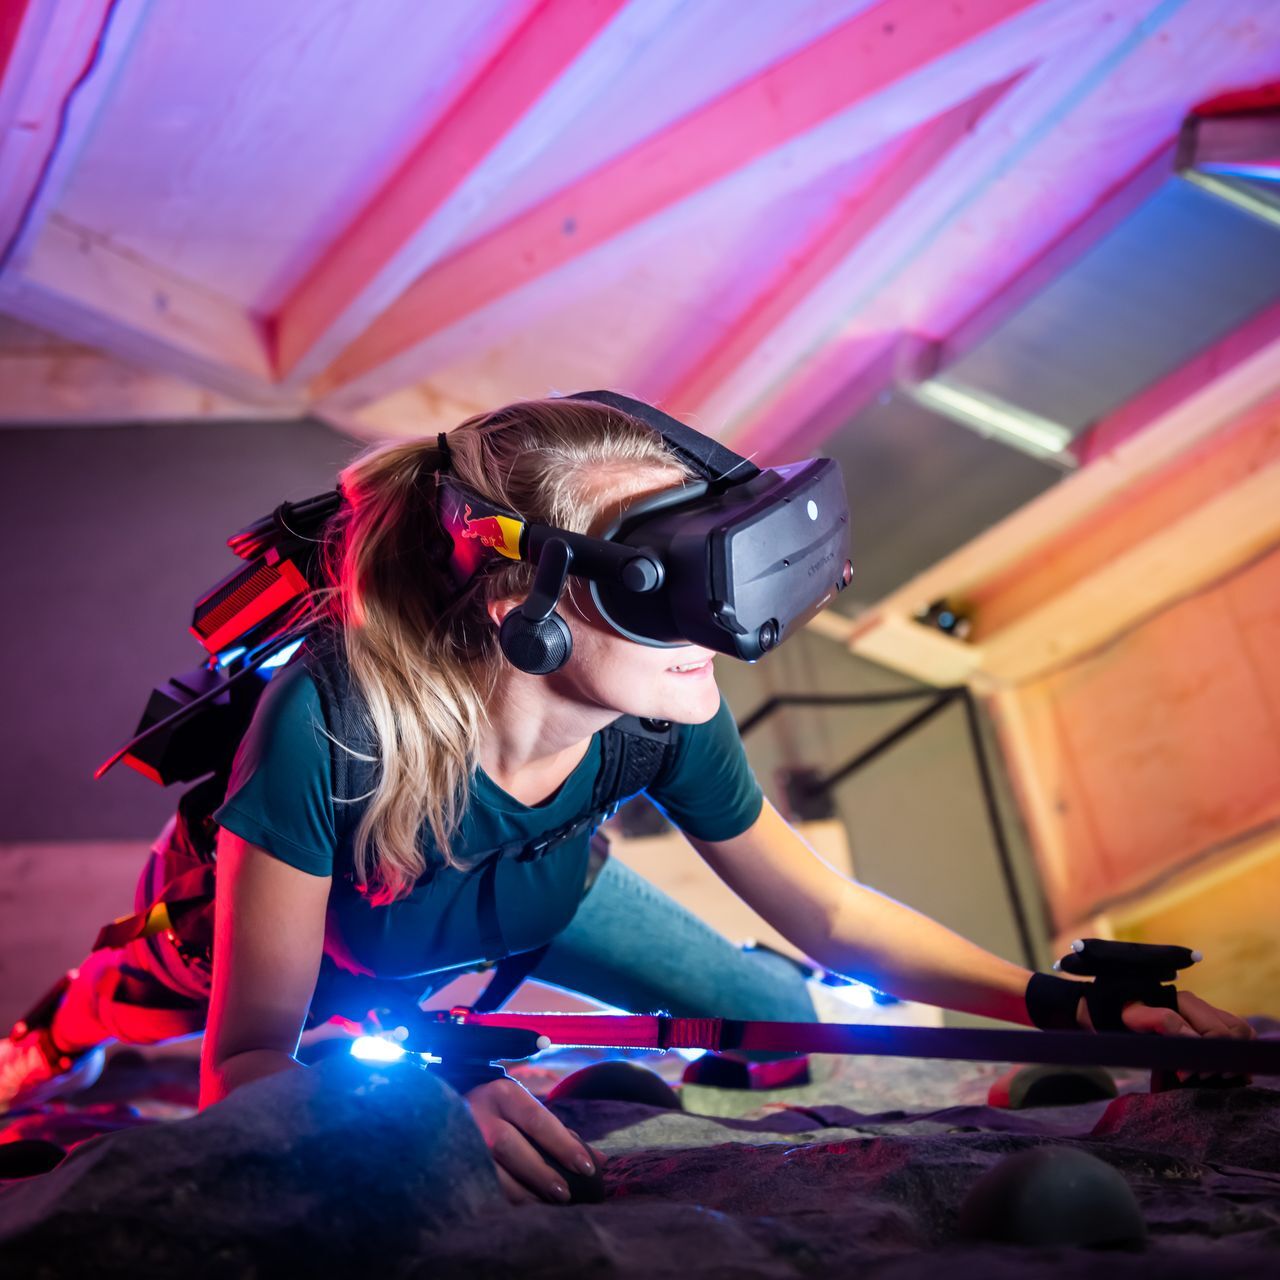 Presso il Museo Svizzero dei Trasporti di Lucerna, è possibile affrontare virtualmente la scalata del monte Cervino “armati” di occhiali di realtà virtuale e di imbracatura da rocciatori: si tratta di un’iniziativa di Red Bull Svizzera e di vari partner, denominata “The Edge Matterhorn VR”, tramite la quale è stata replicata l’ascesa reale degli alpinisti Jérémie Heitz e Sam Anthamatten, guide alpine di Zermatt, prevedendo anche gli effetti 4D del vento, delle vibrazioni, texture e numerosi oggetti o elementi di scena